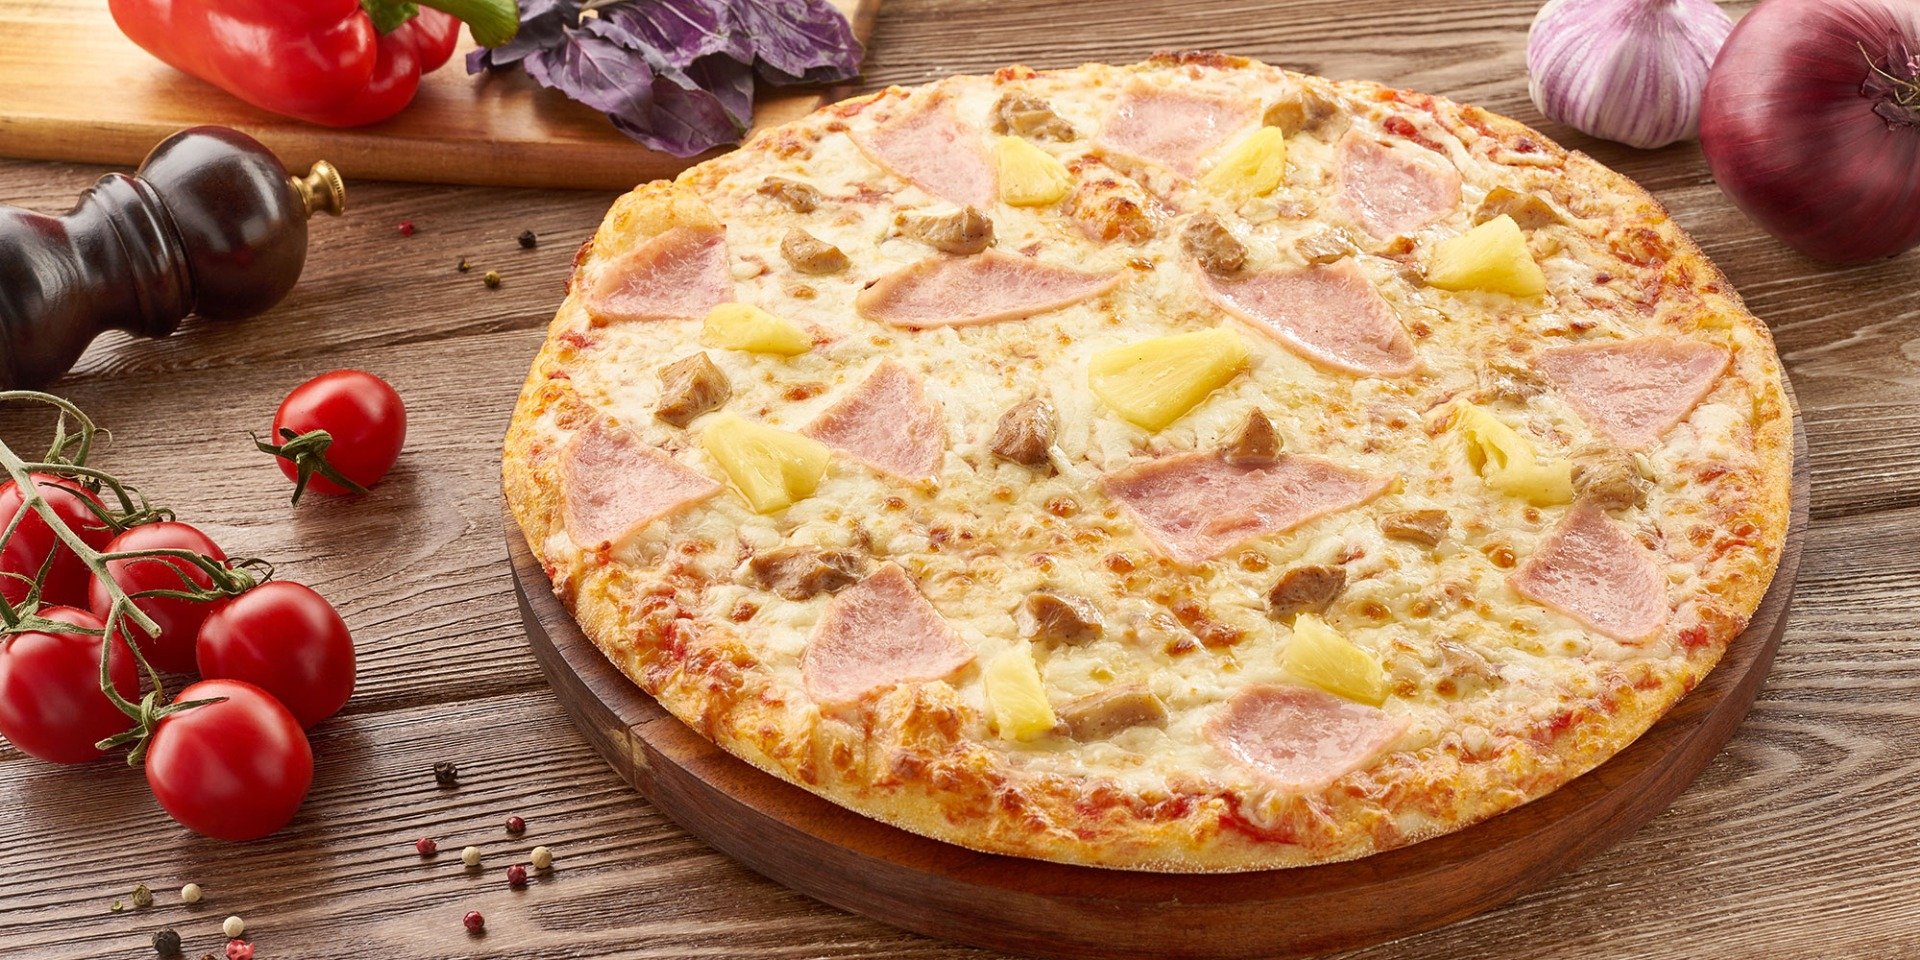 состав пицца гавайская с ананасами фото 45